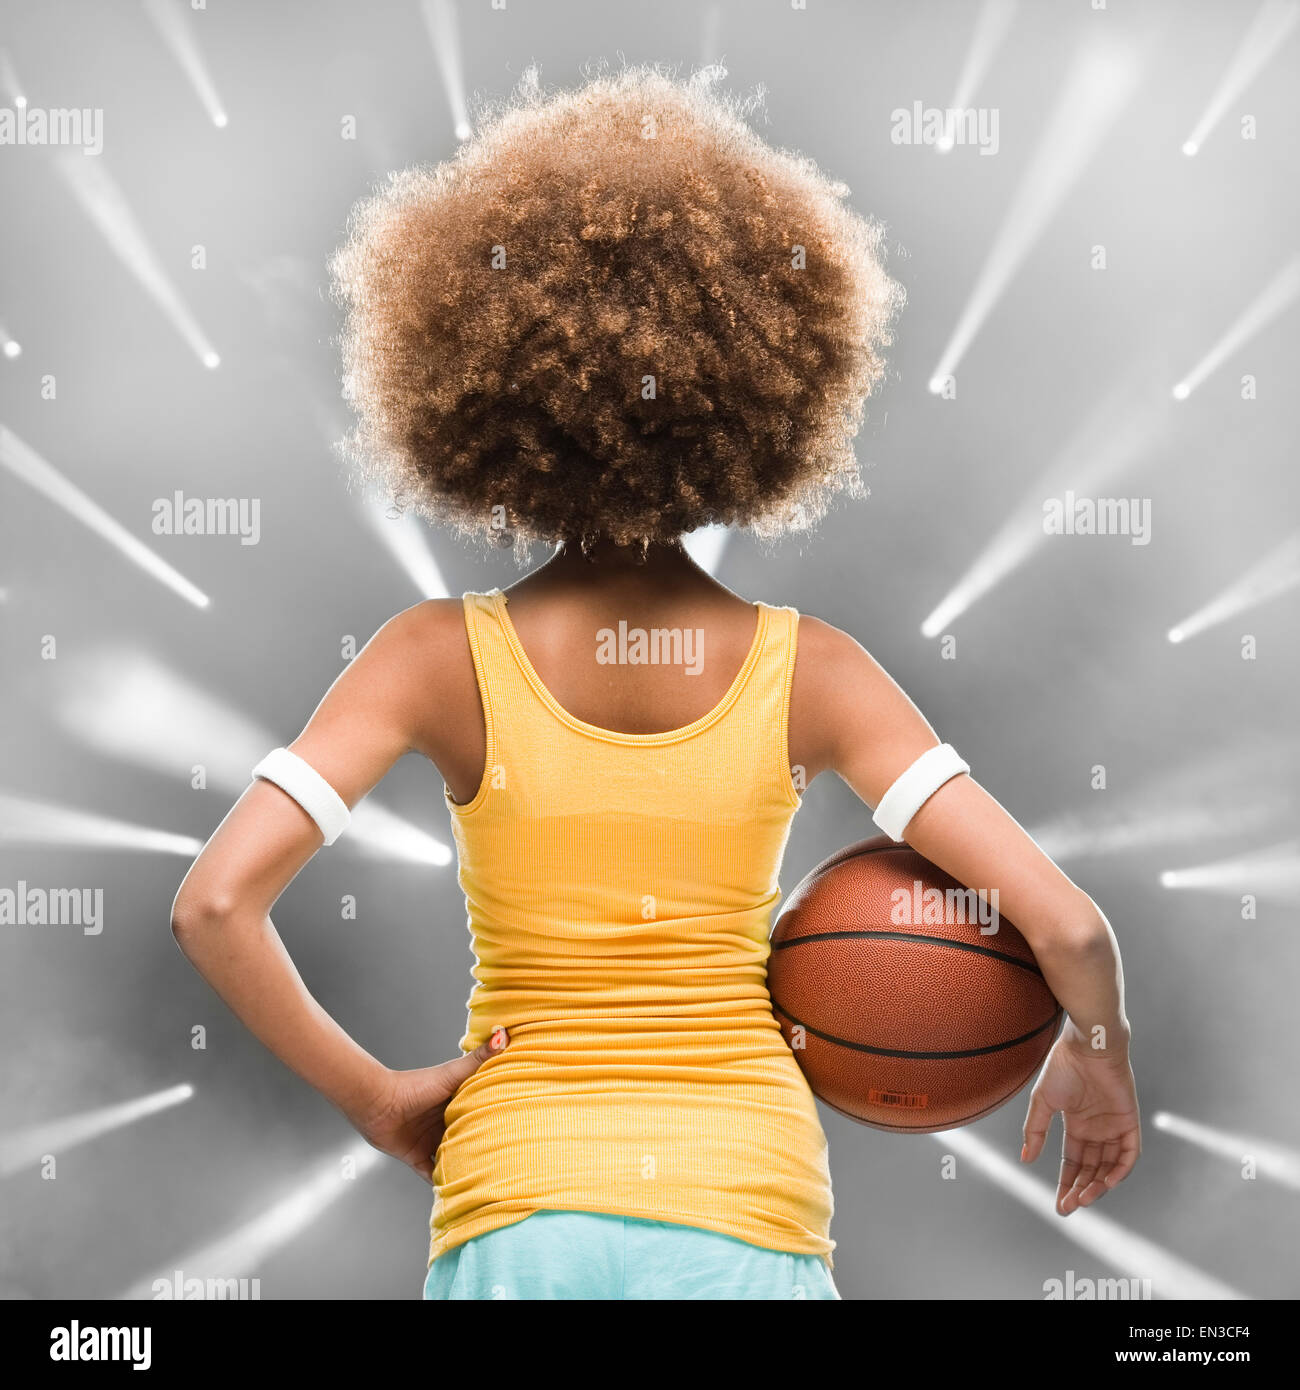 Joueur de basket-ball féminin avec un afro Banque D'Images